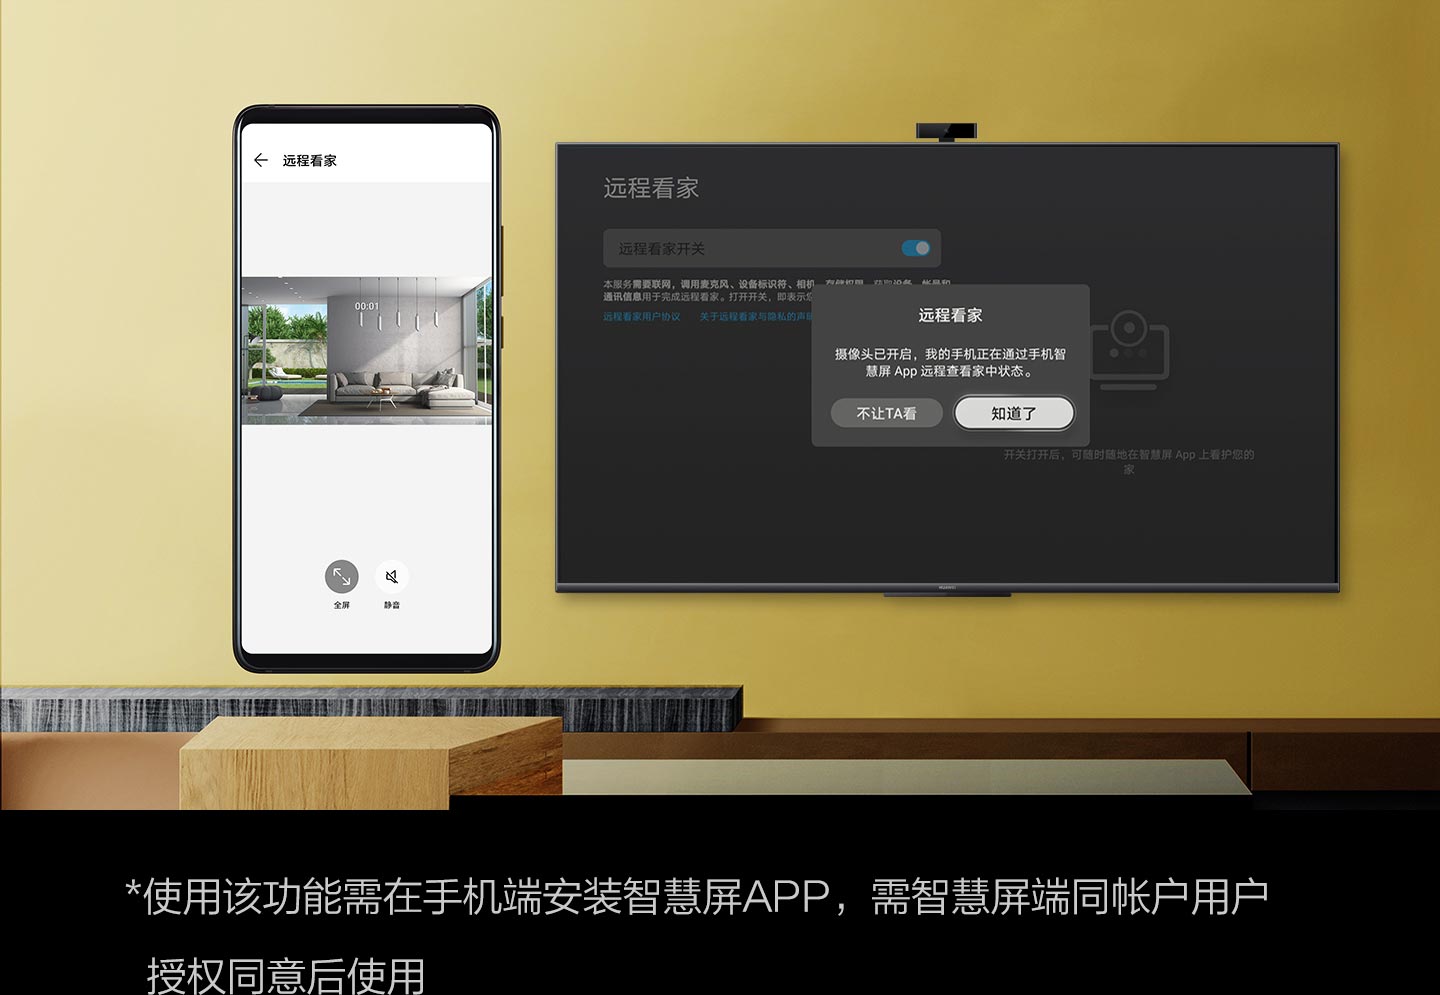 华为智慧屏 S系列65吋75吋新品明日开售，一起来打个电视